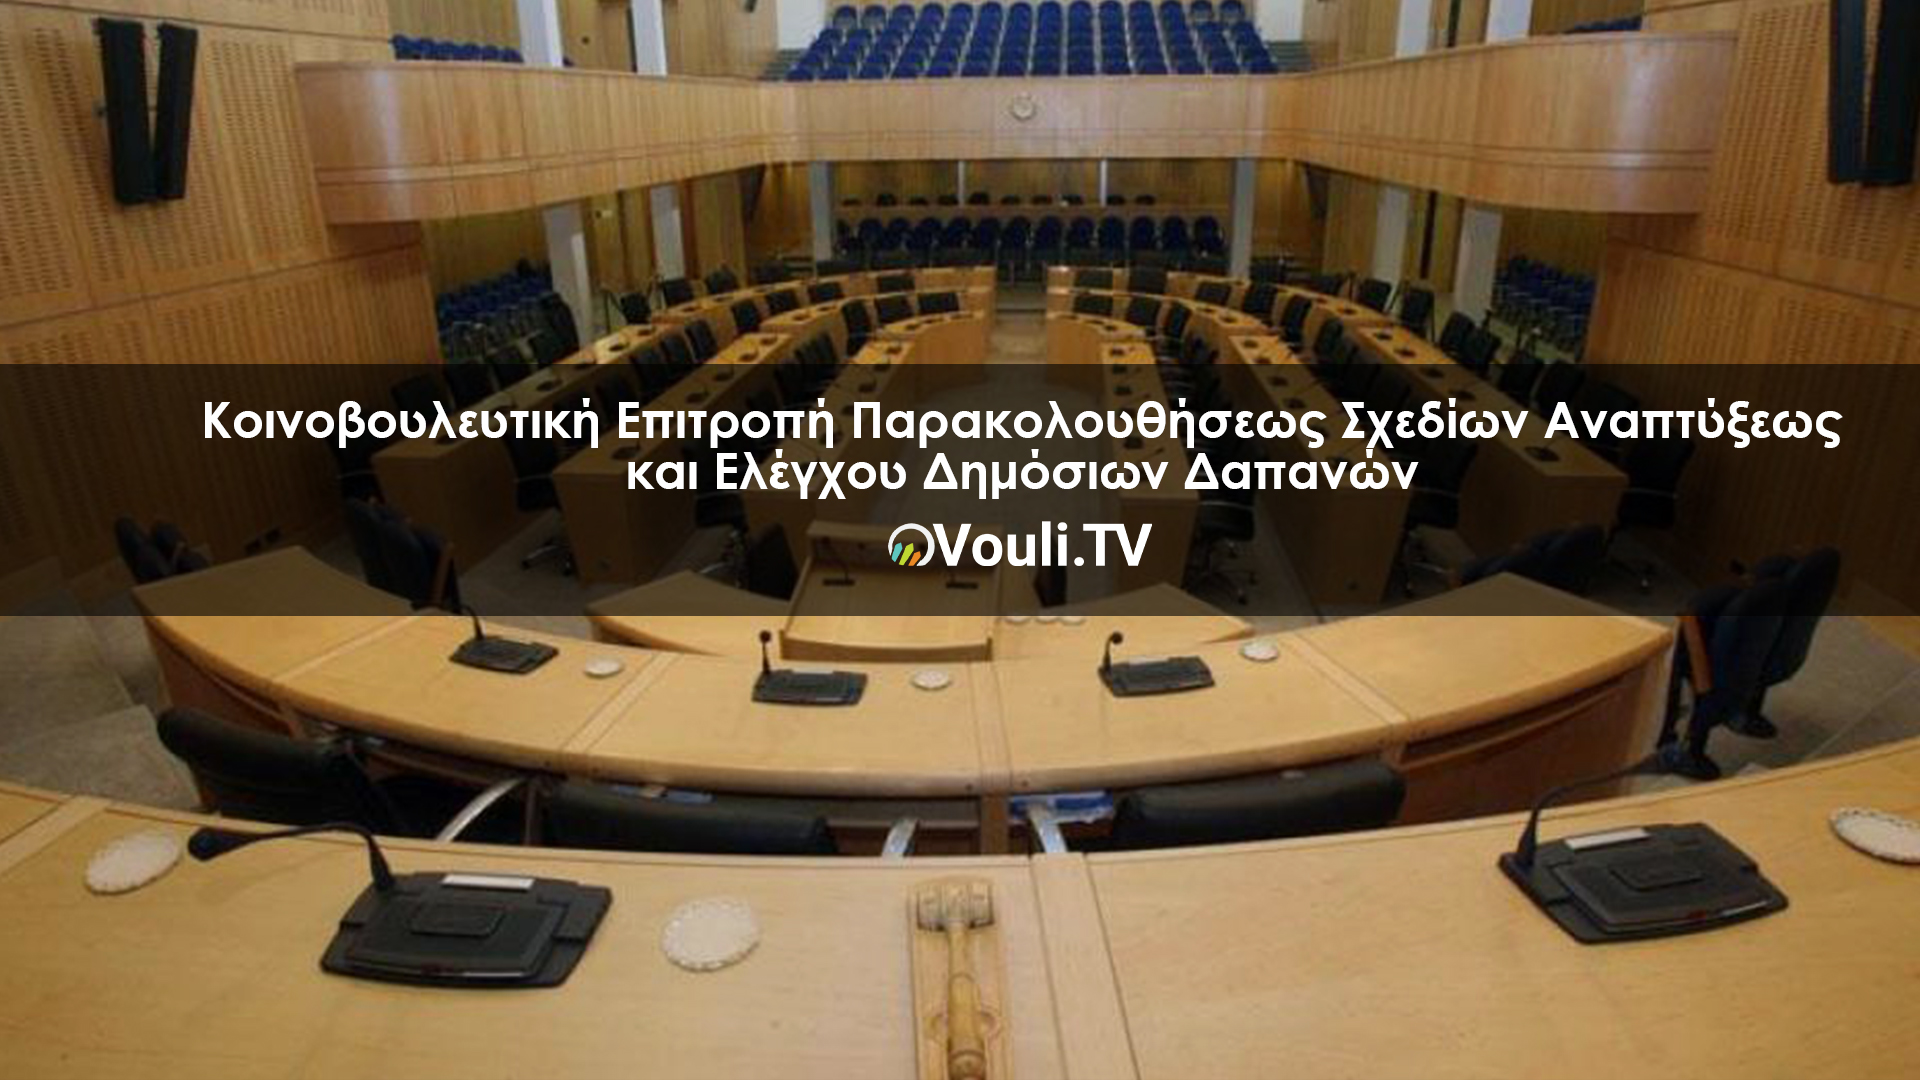 Κοινοβουλευτική Επιτροπή Παρακολουθήσεως Σχεδίων Αναπτύξεως και Ελέγχου Δημόσιων Δαπανών | Vouli report 02/12/2021